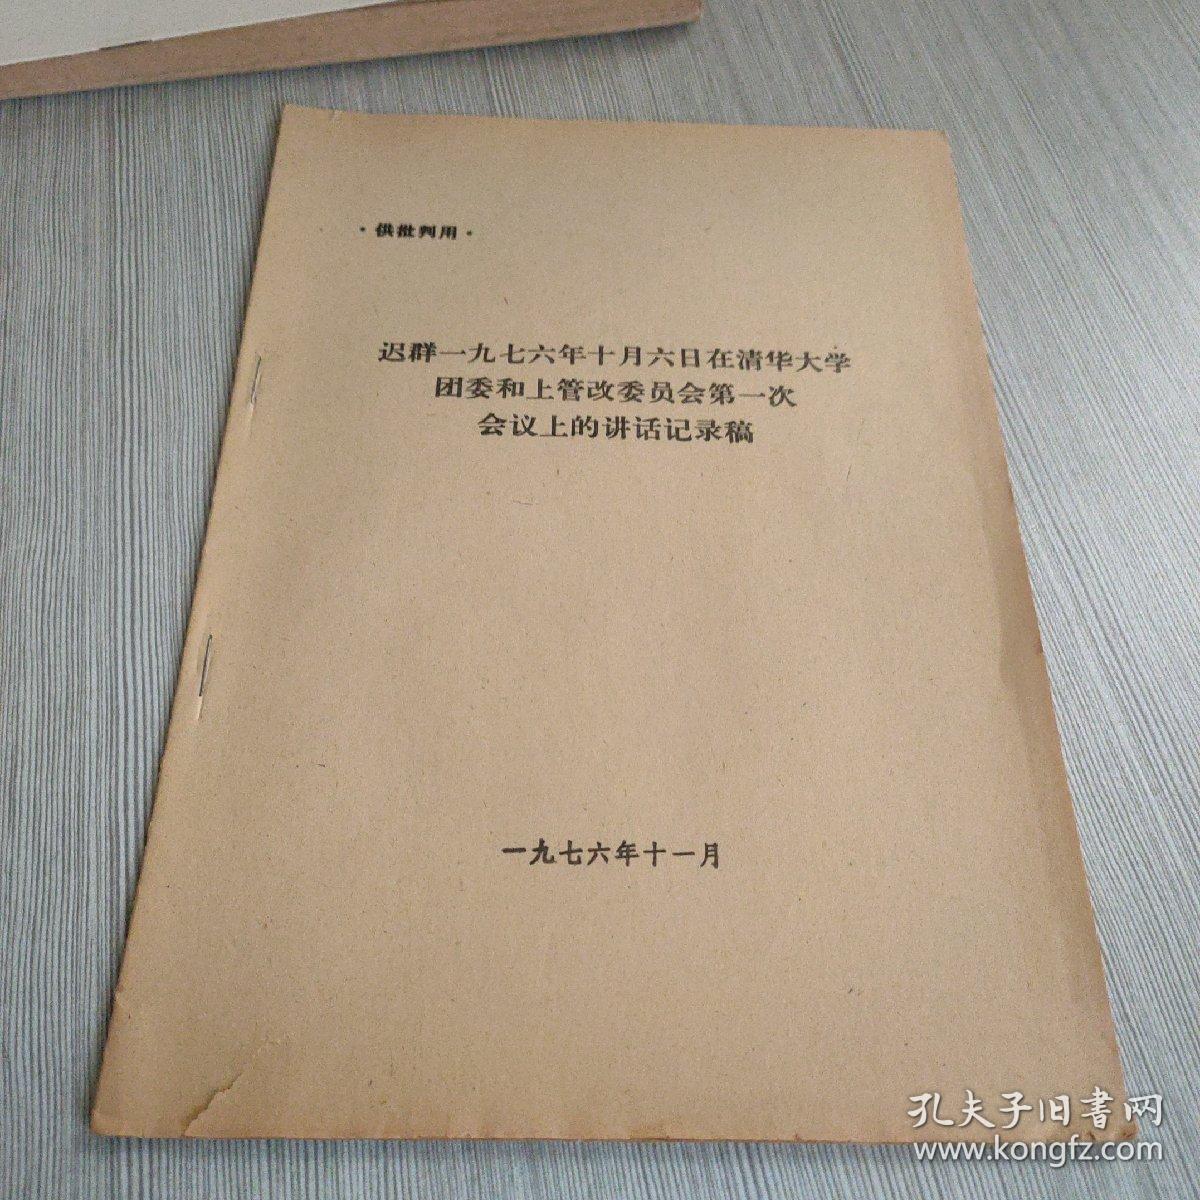 迟群一九七六年十月六日在清华大学团委和上管改委员会第一次会议上的讲话记录稿